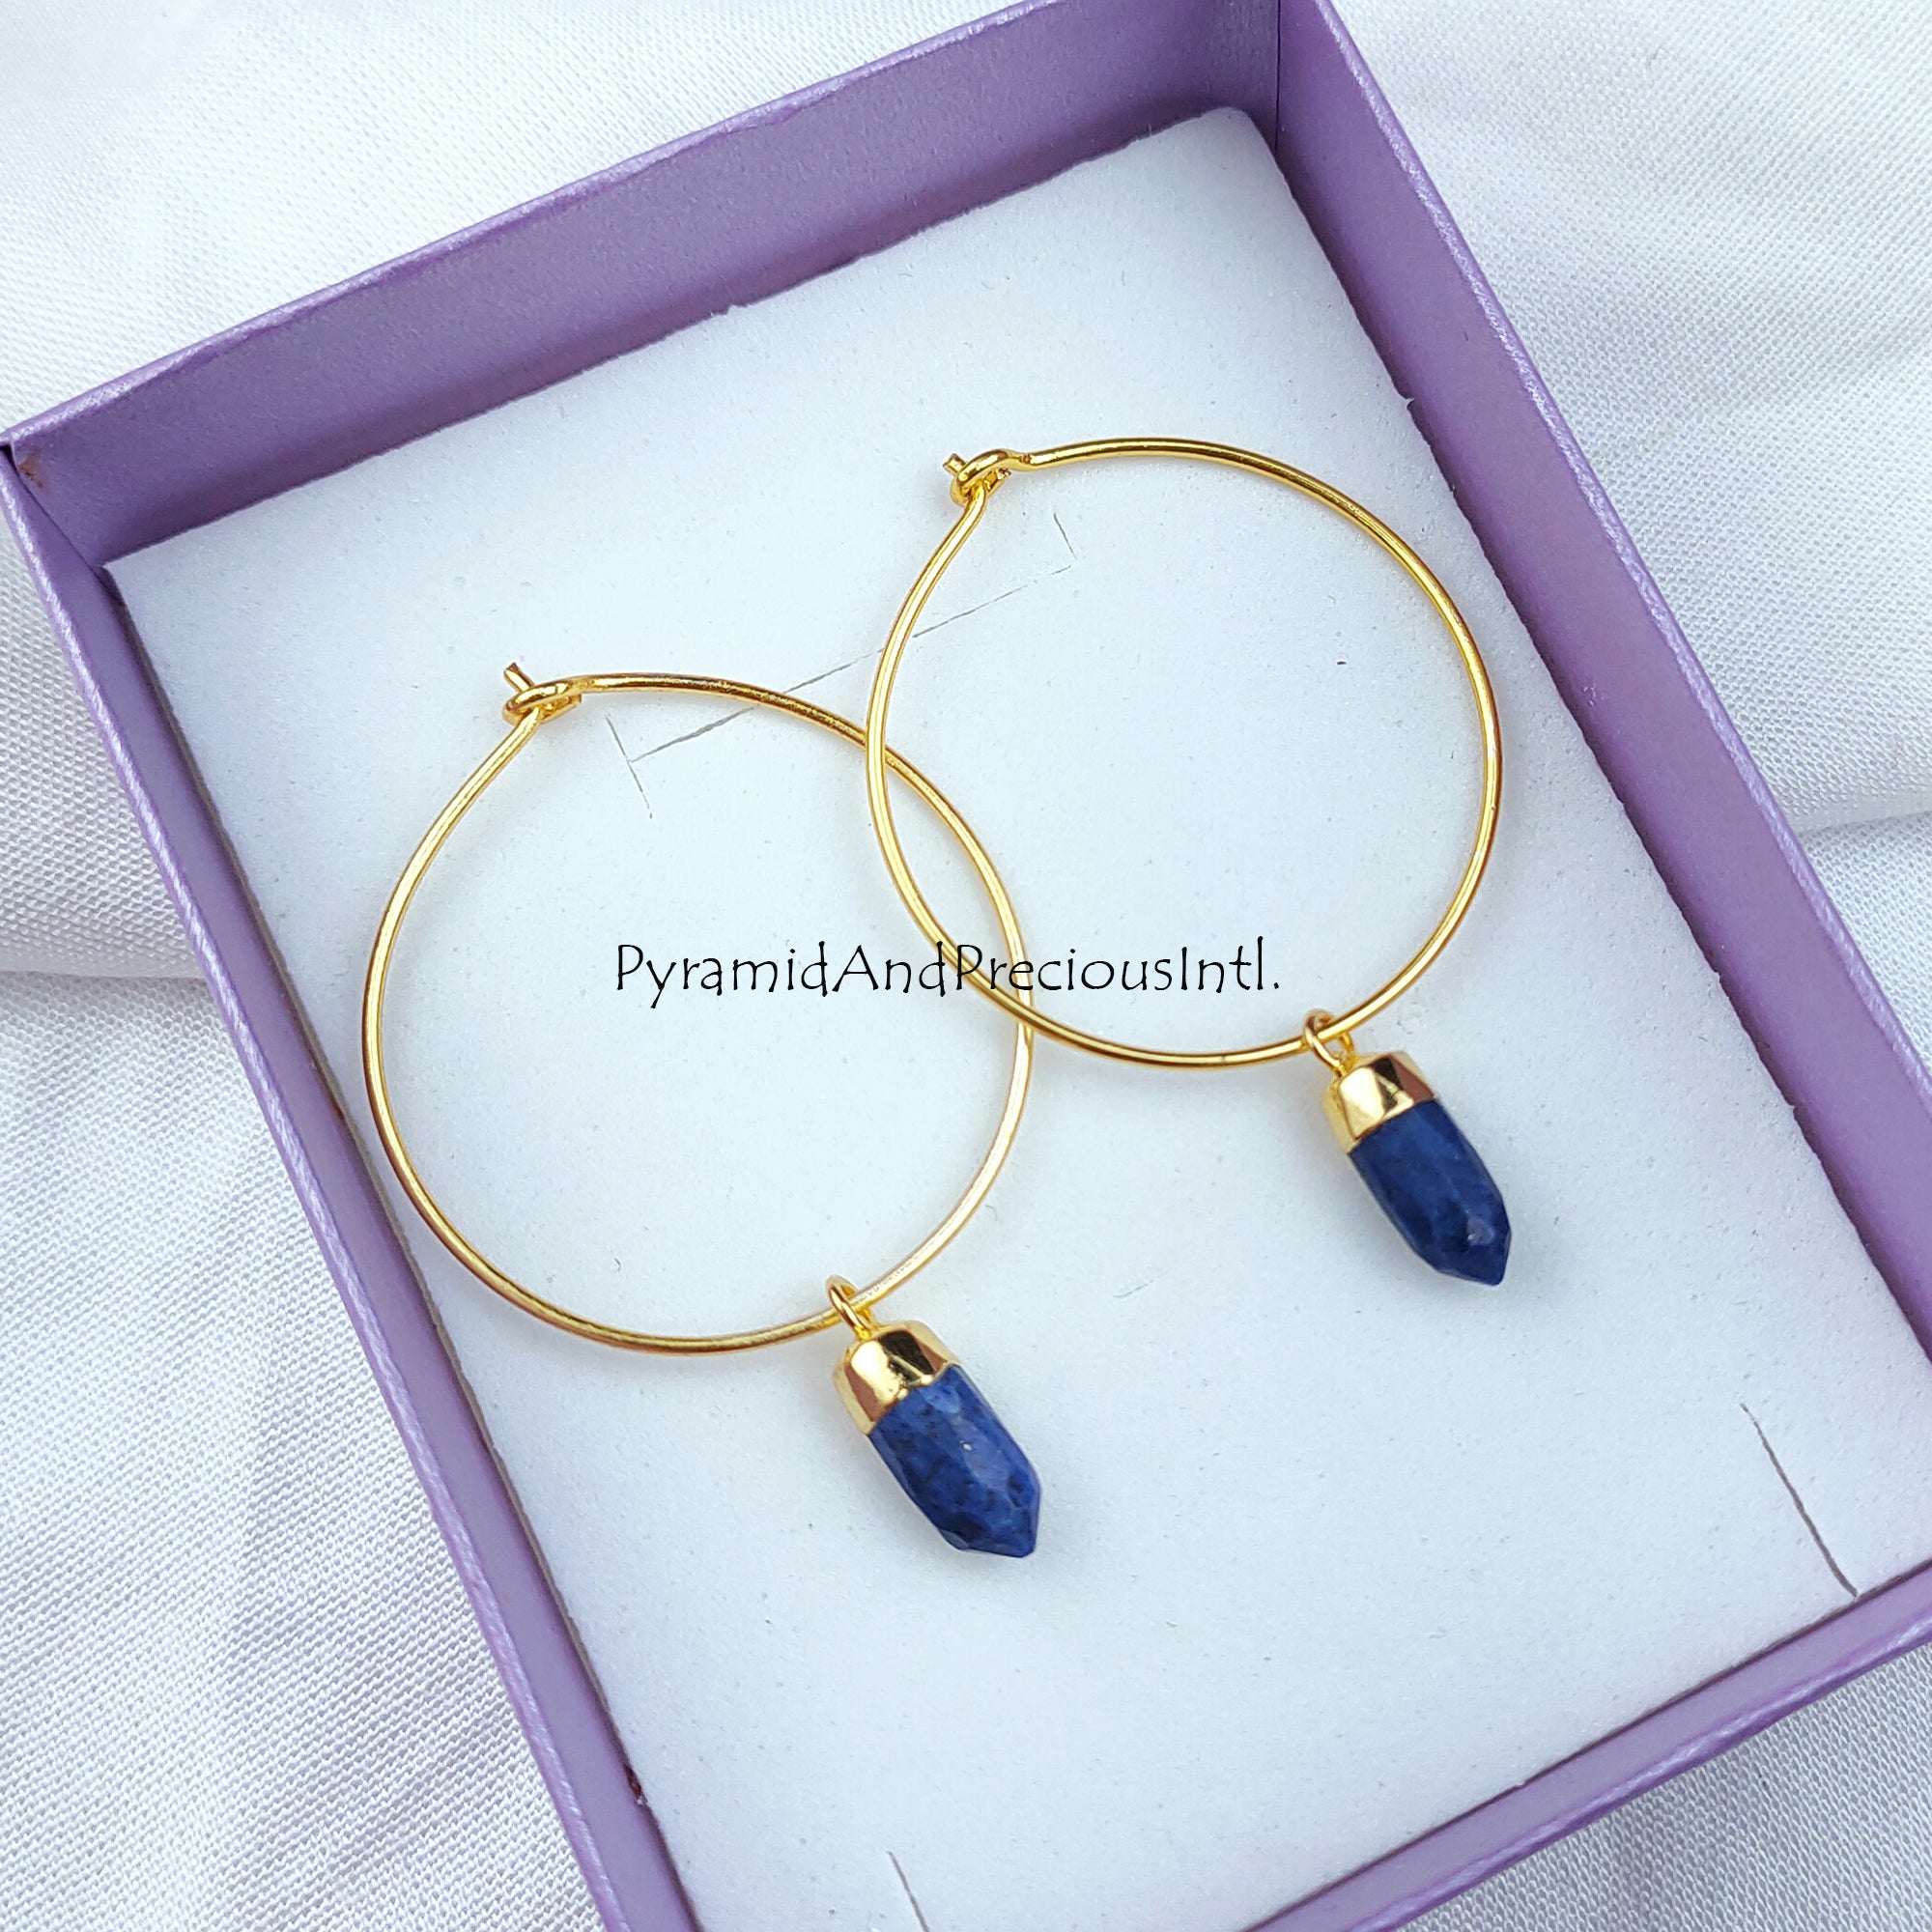 lapis lazuli earrings, blue pencil earrings, dangle earrings, pencil point earrings, electroplated earrings, lapis earring, gift for her